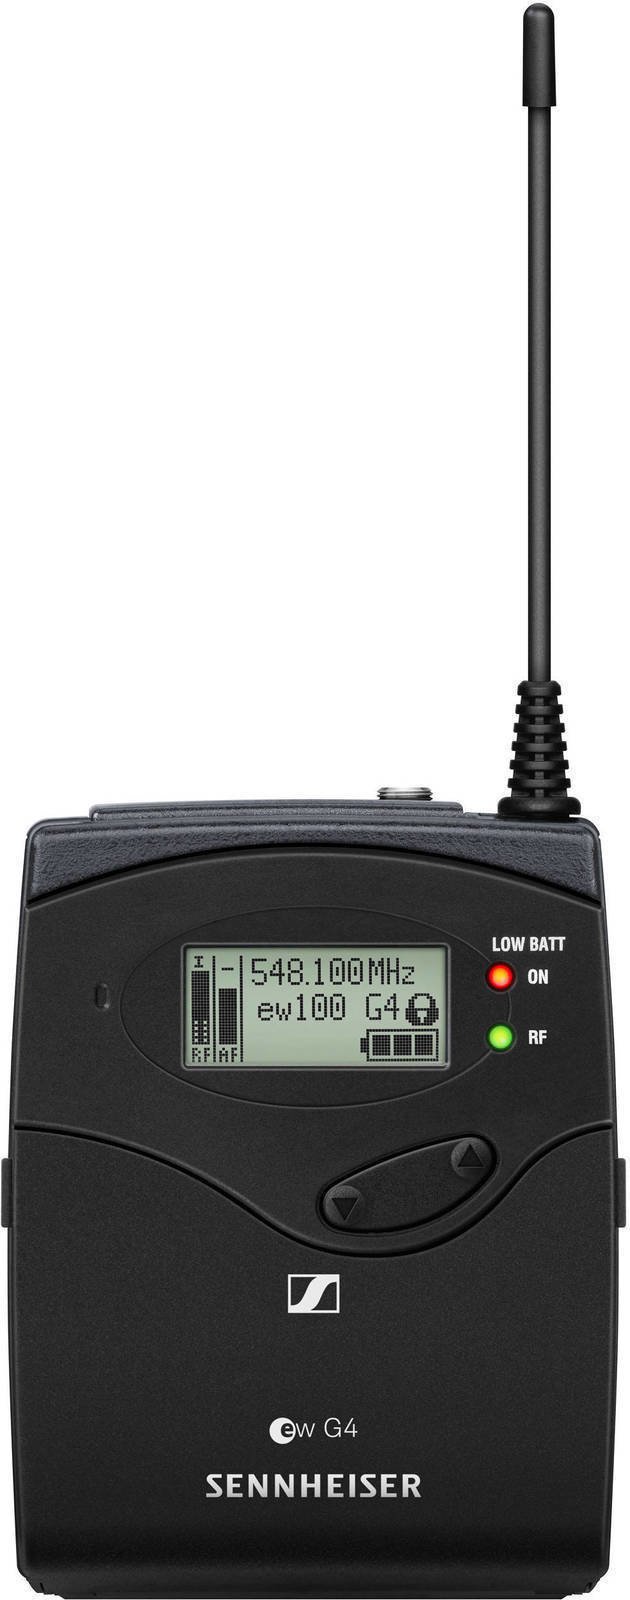 Trådlöst ljudsystem för kamera Sennheiser EK 100 G4-A1